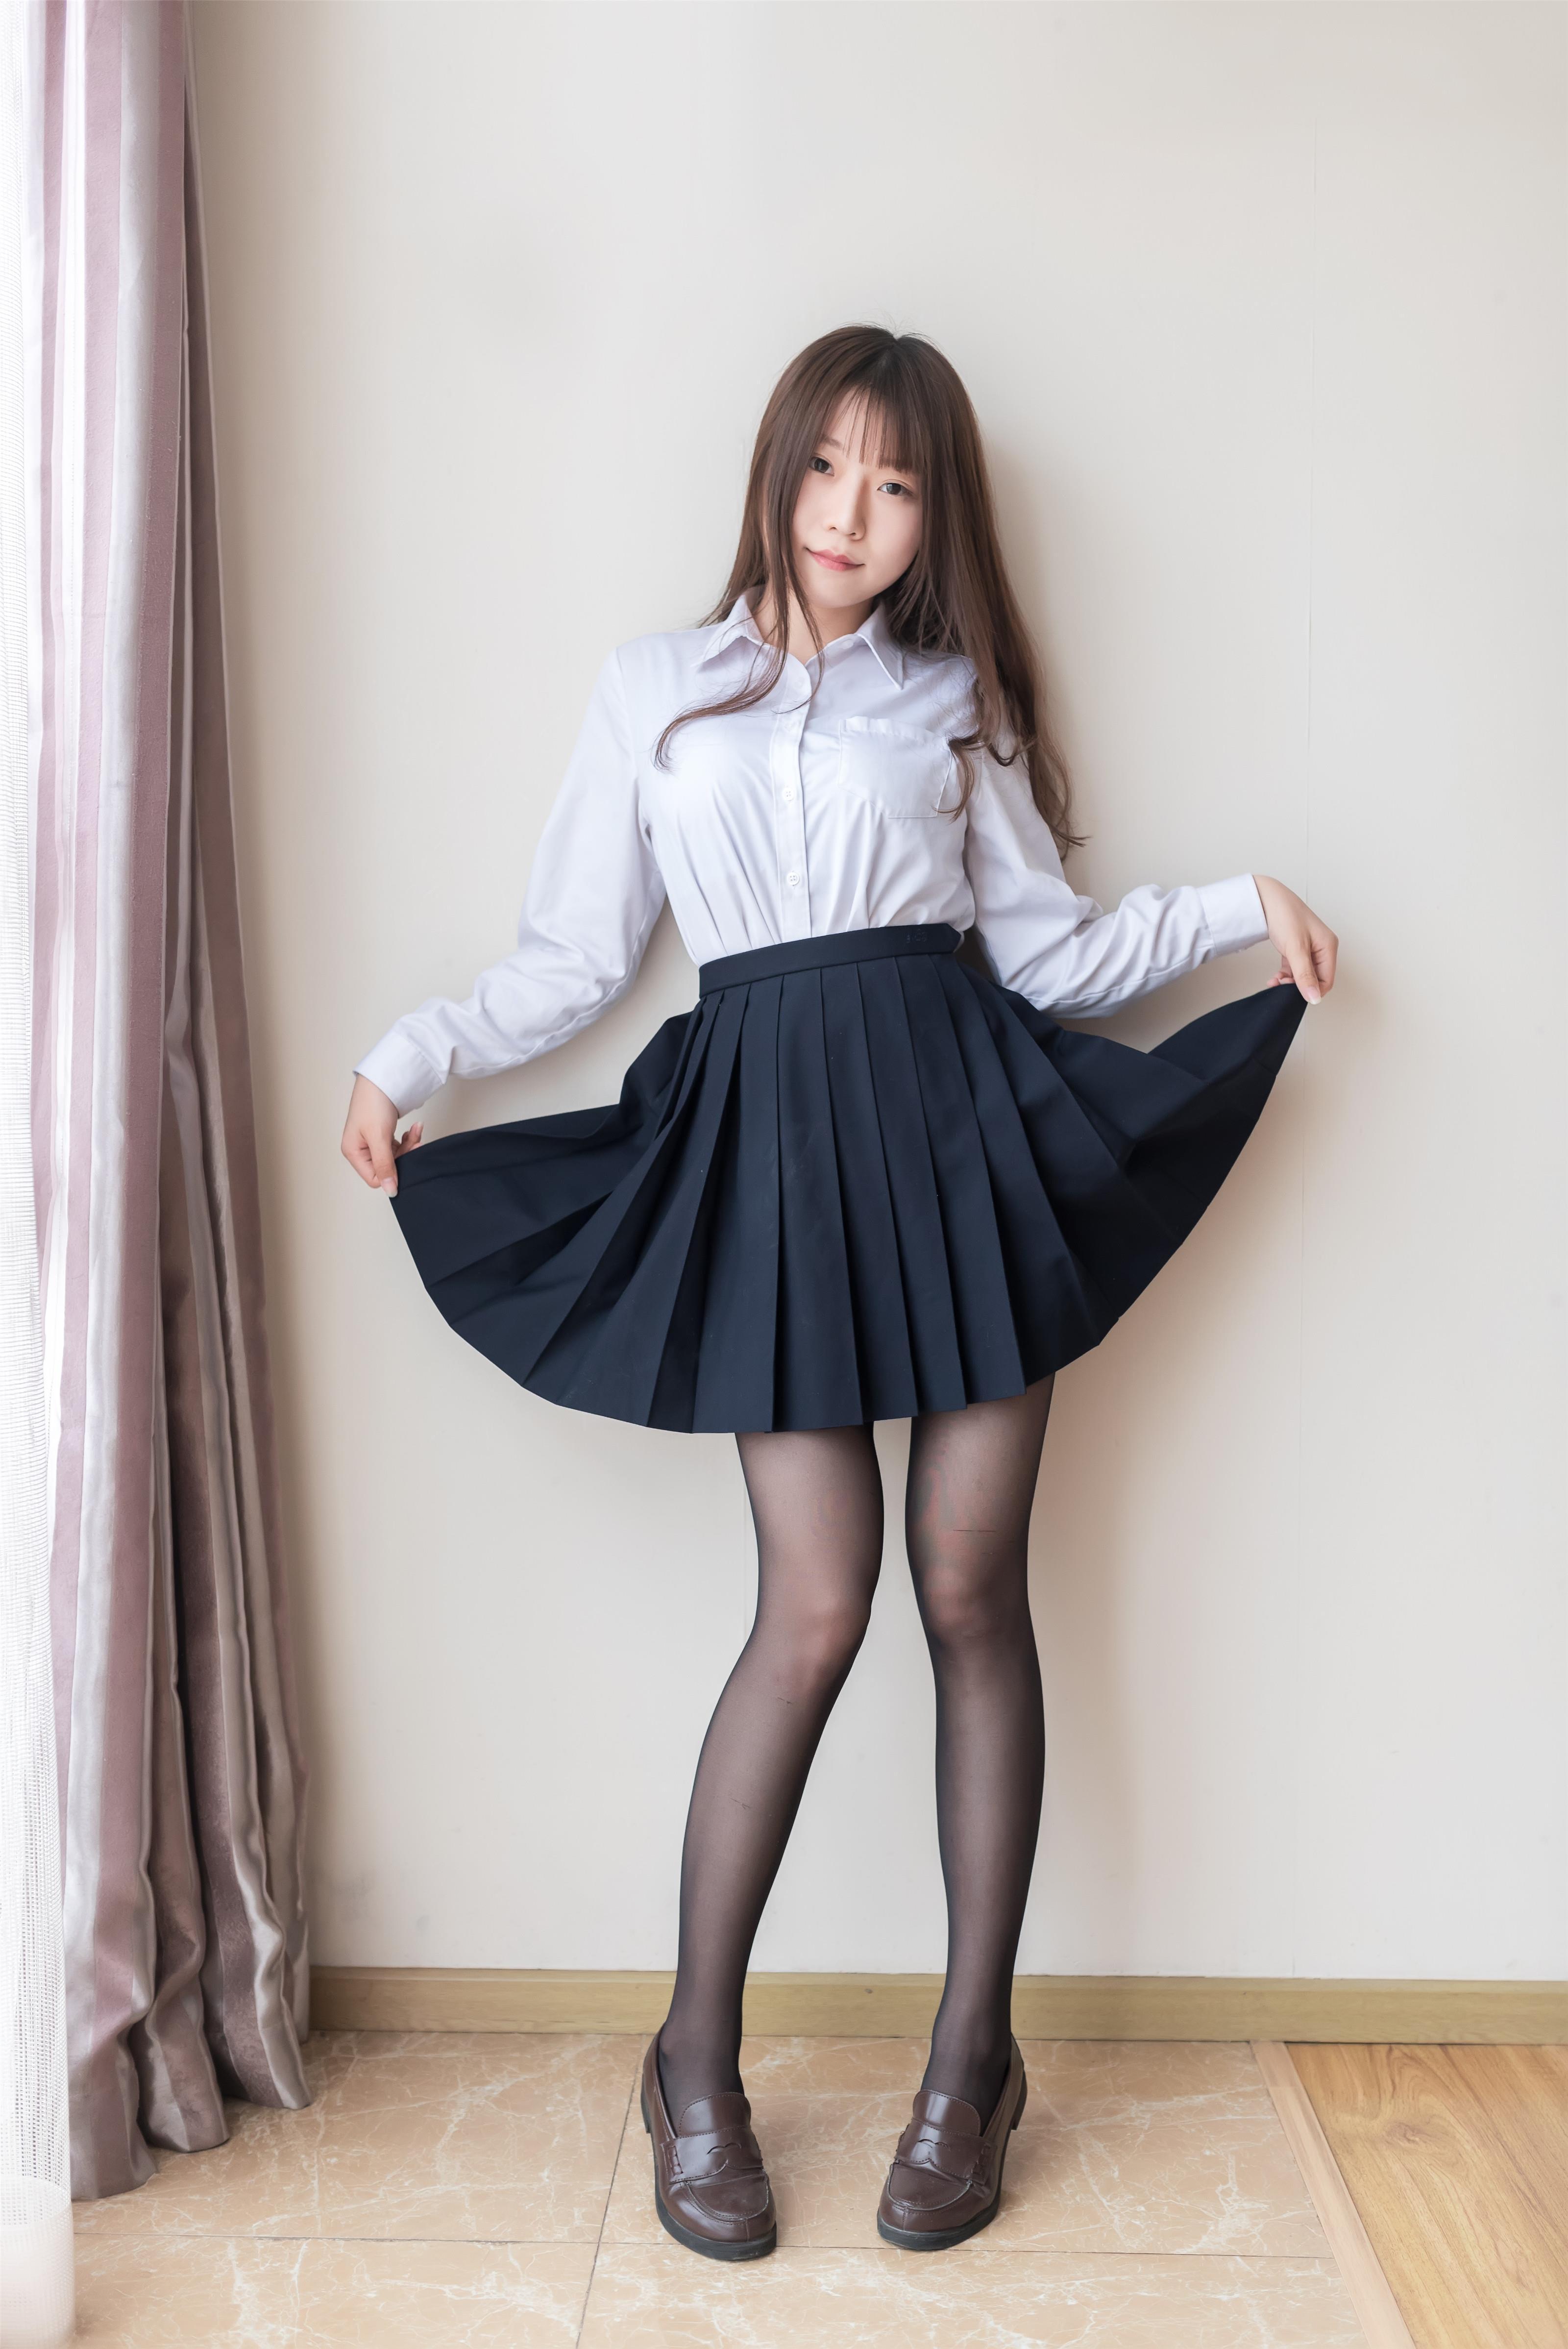 [风之领域]NO.048 性感高中女生 白色衬衫与黑色短裙加黑色丝袜美腿私房写真集,